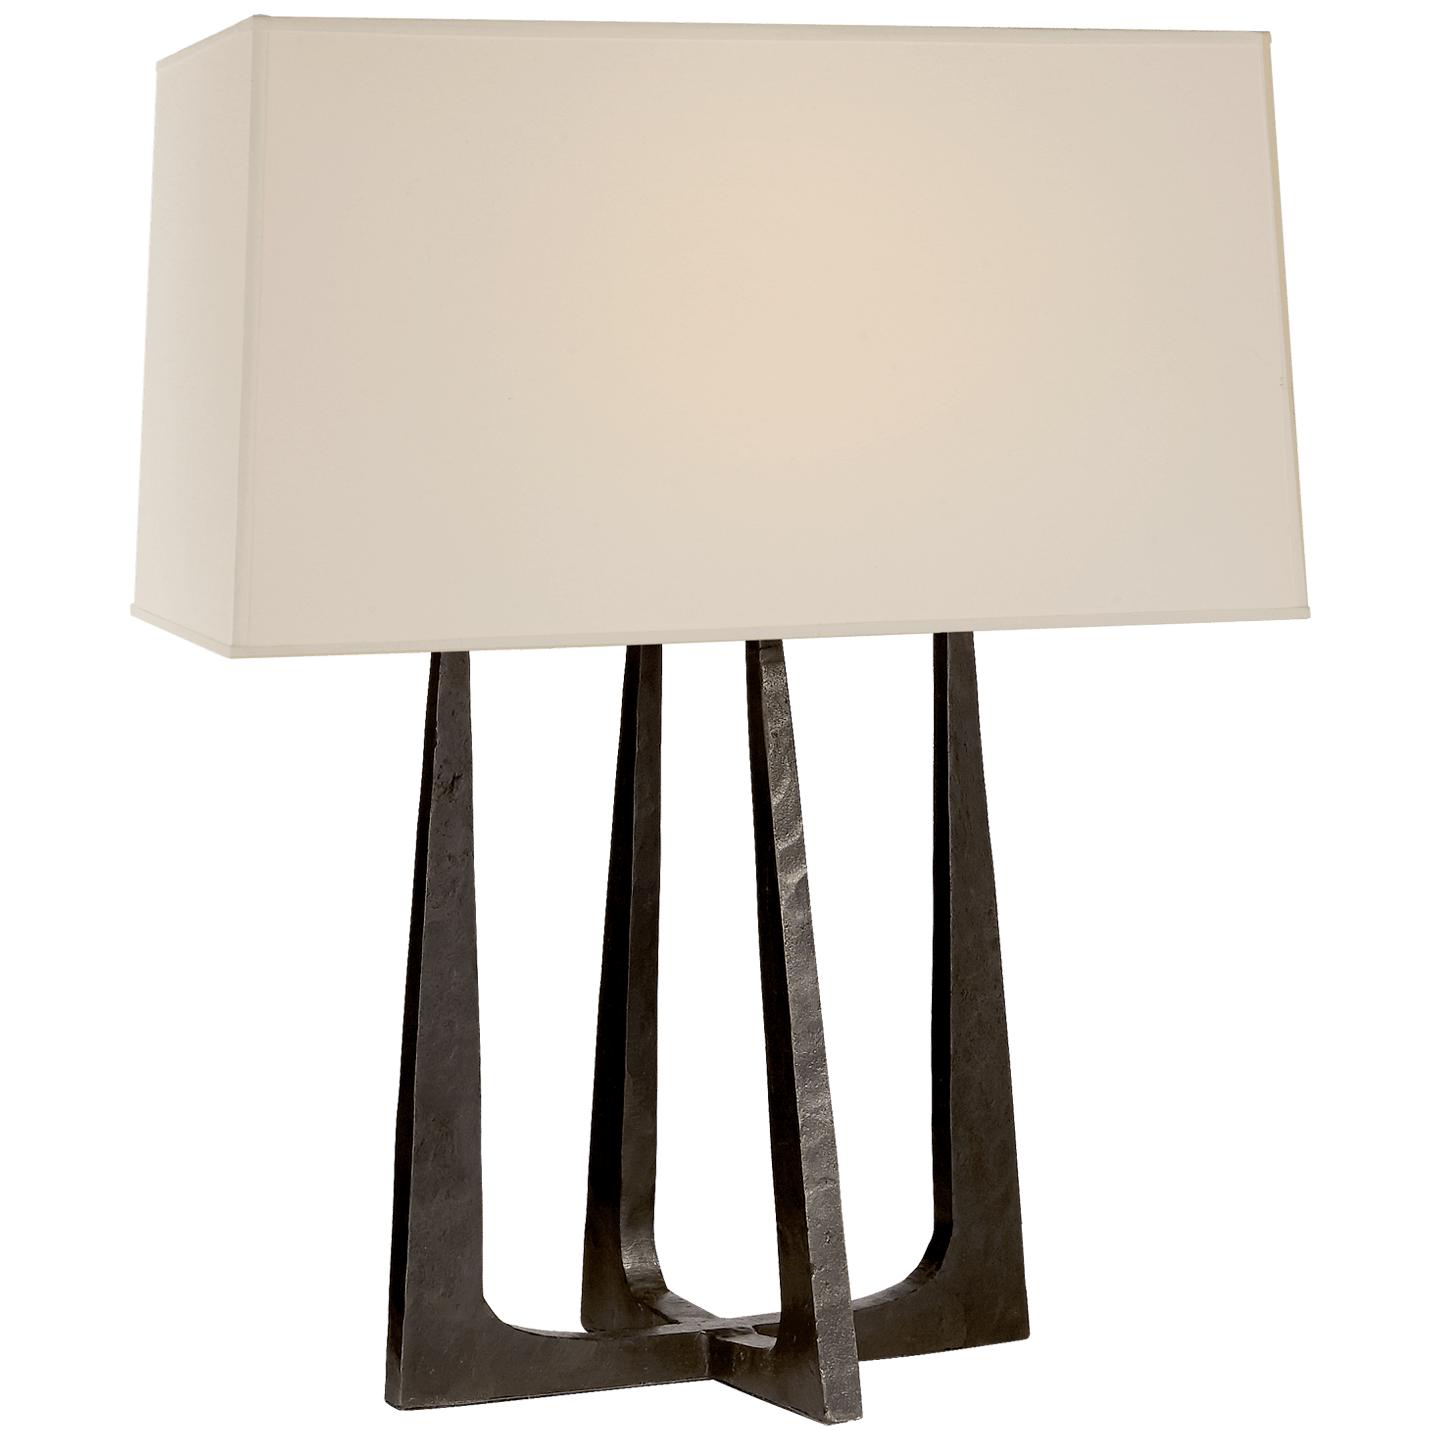 Купить Настольная лампа Scala Hand-Forged Bedside Lamp в интернет-магазине roooms.ru